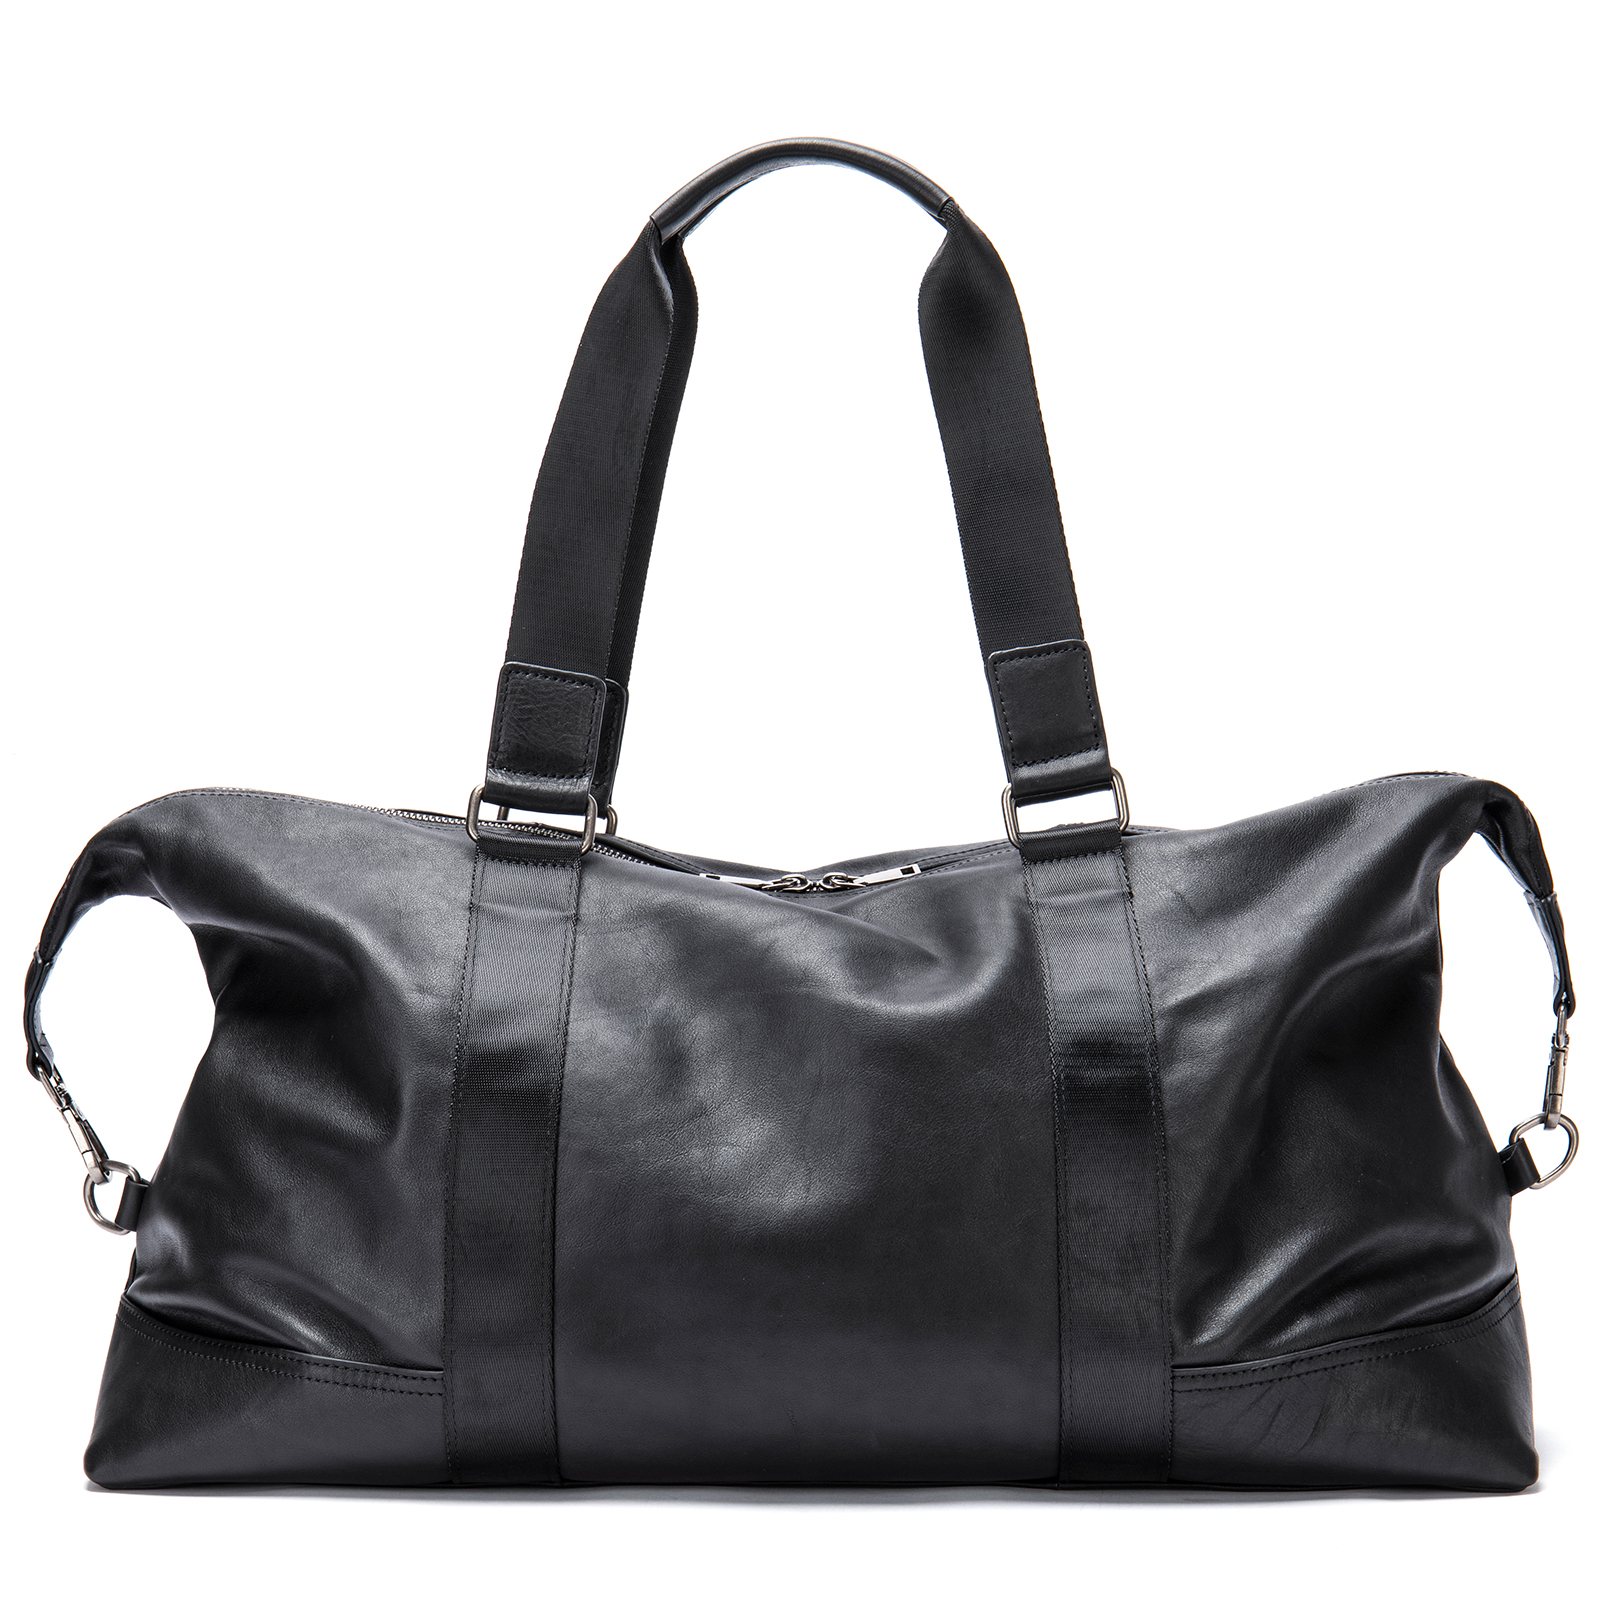 Дорожная сумка мужская FAUSTINI 4018 черная, 31х52х19 см